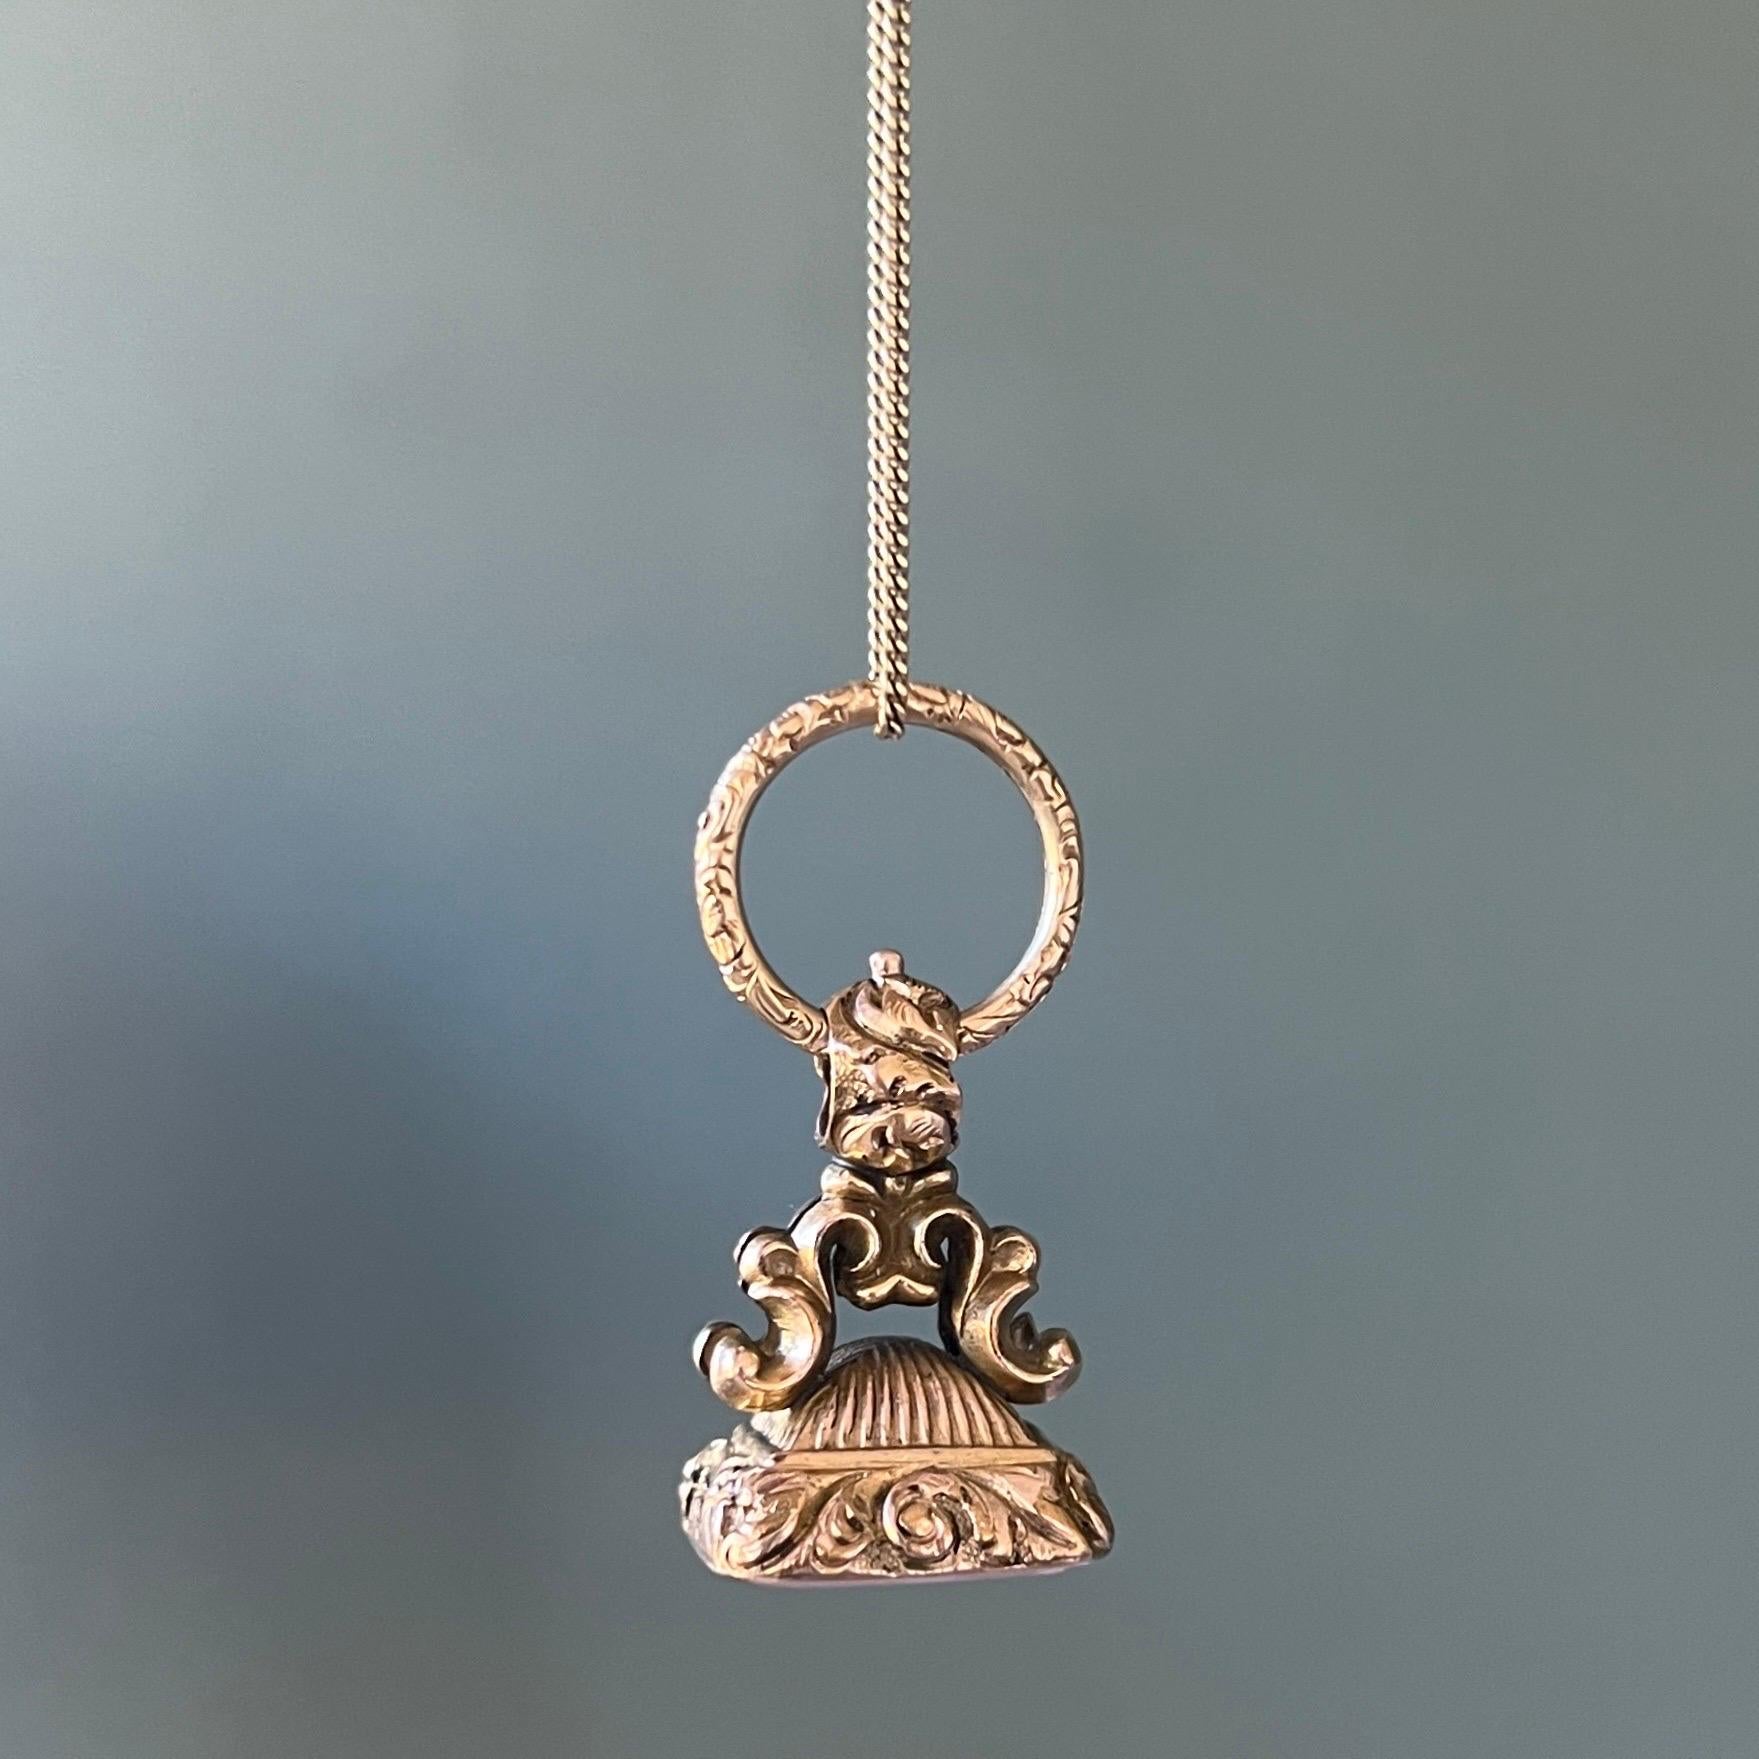 Pendentif en or 9 carats en forme de sceau, de style victorien ancien. Ce magnifique sceau porte-bonheur est orné d'arcs à volutes typiques menant à une anse intégrale attachée à un anneau fendu en or. L'anneau fendu est orné de motifs floraux et